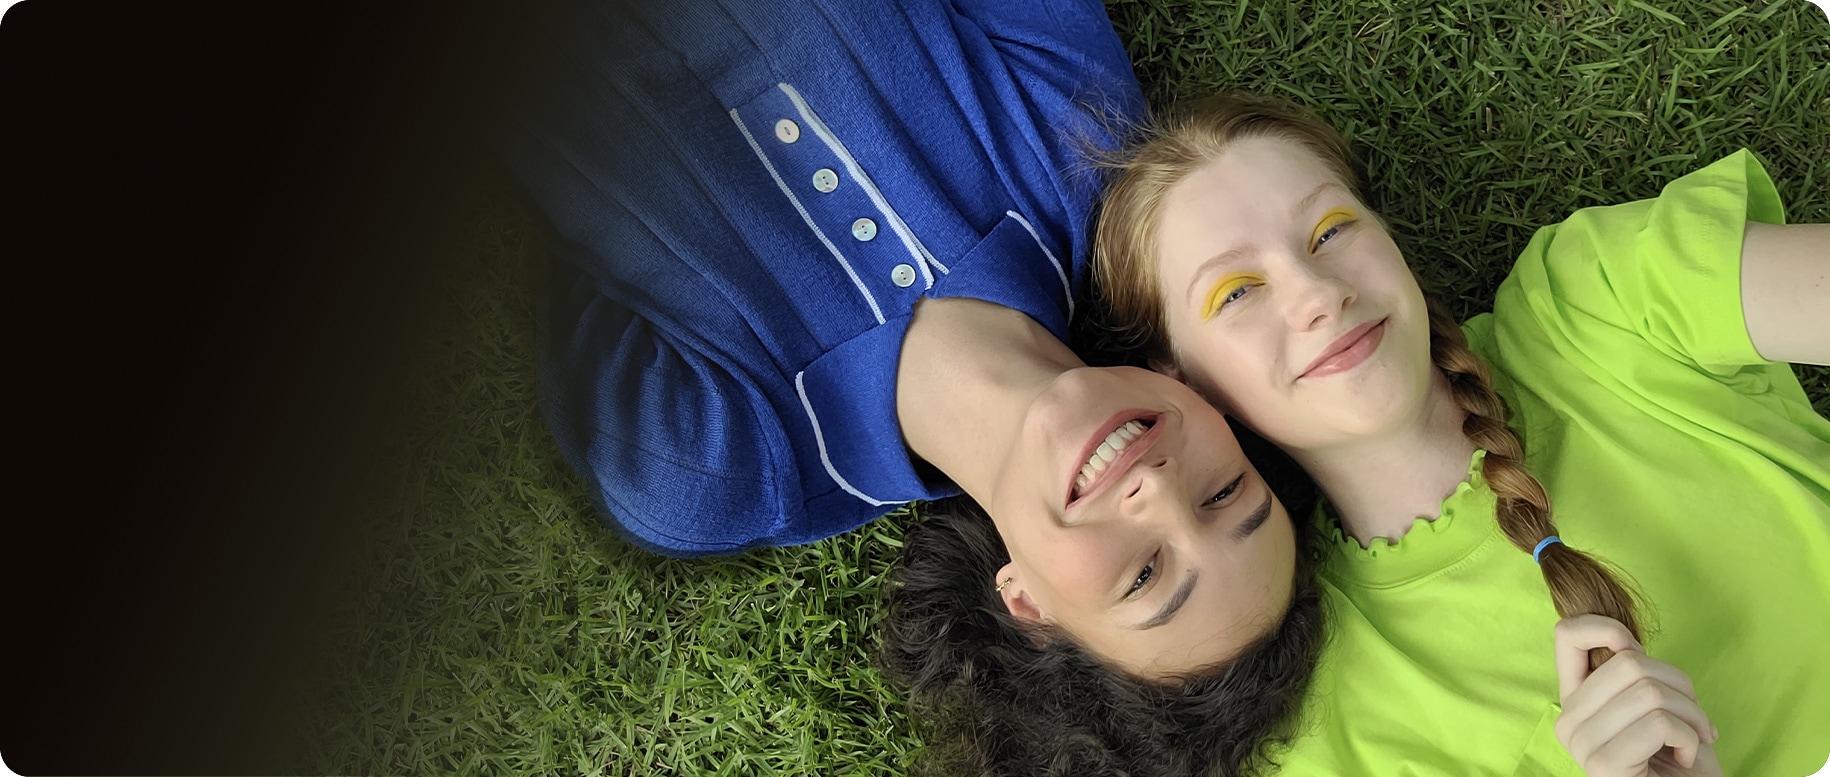 Eine Luftaufnahme von zwei Frauen, die nebeneinander auf dem Gras liegen. Die Frau links trägt ein blaues Hemd mit Kragen, während die Frau rechts ein hellgrünes Oberteil trägt. Ihre Köpfe werden von entgegengesetzten Enden zusammengedrückt. Sie lächeln beide in die Kamera.